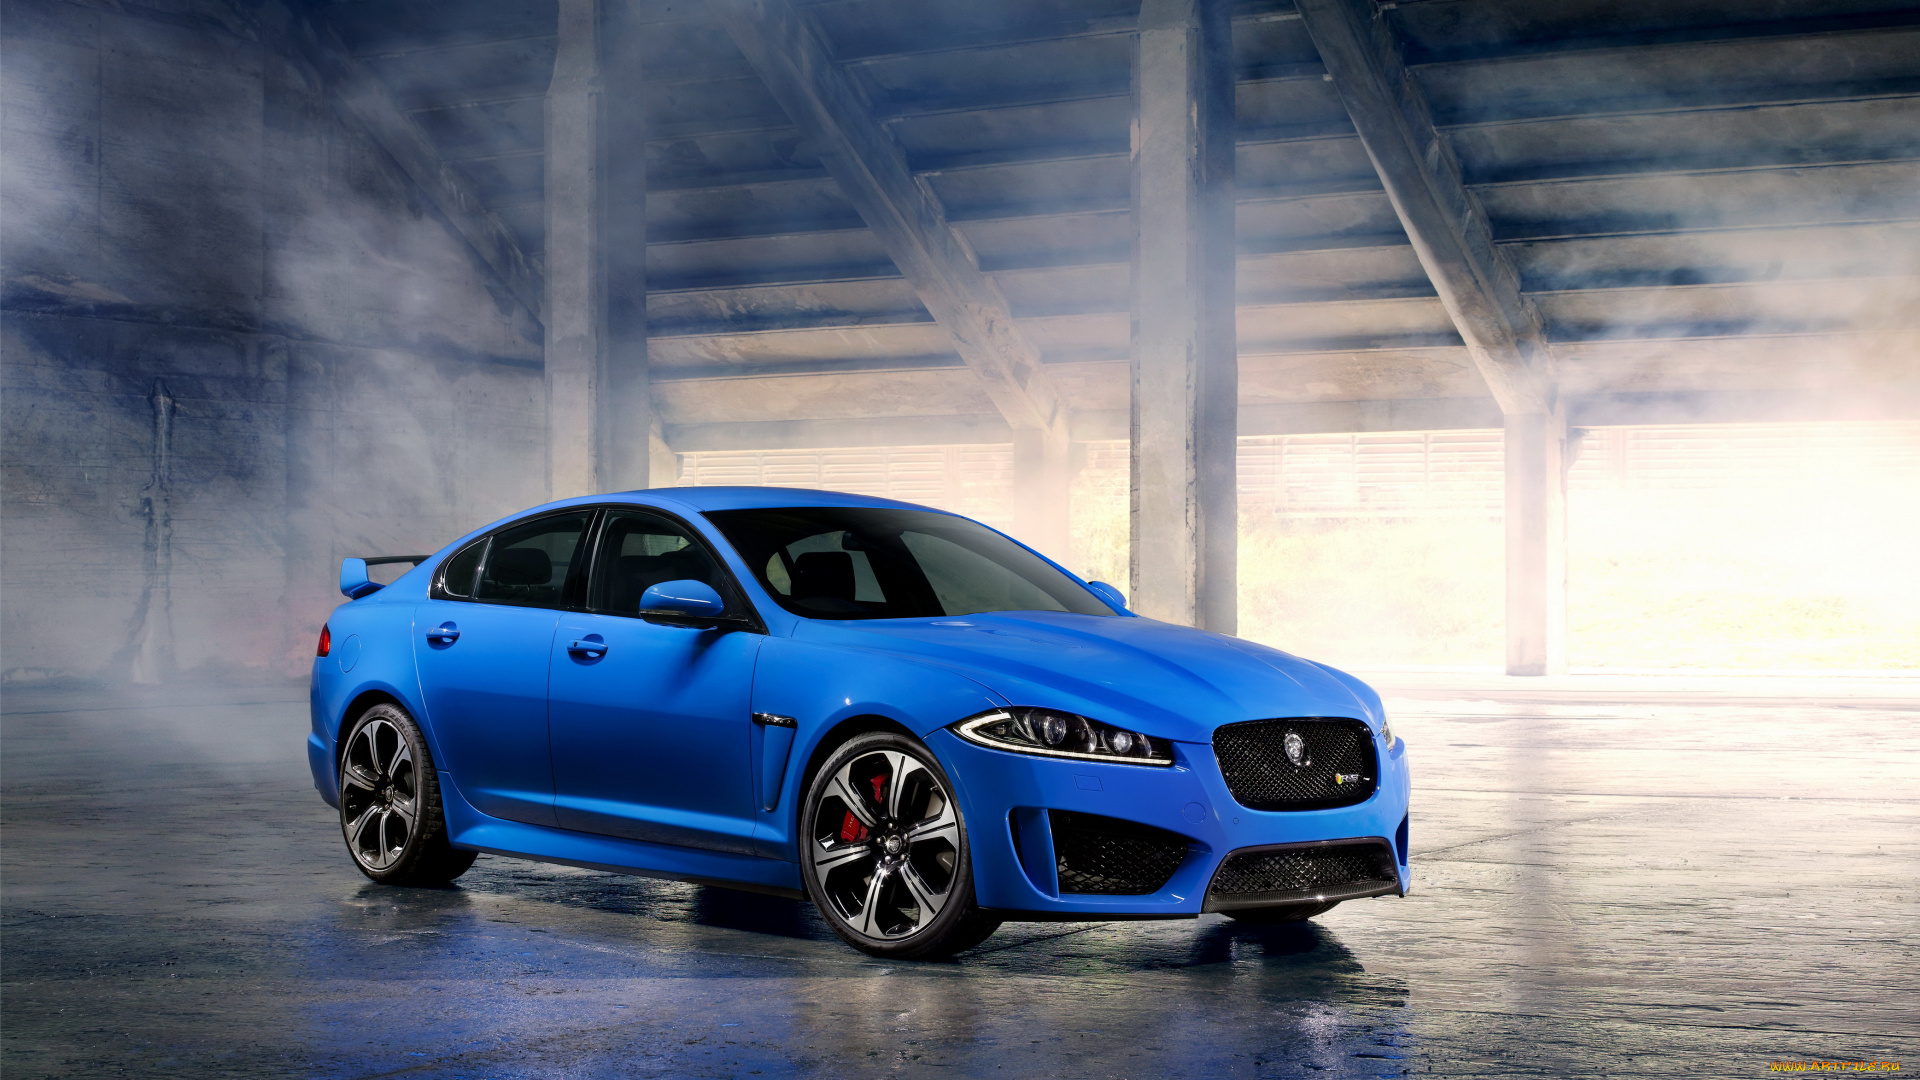 2013, jaguar, xfr, автомобили